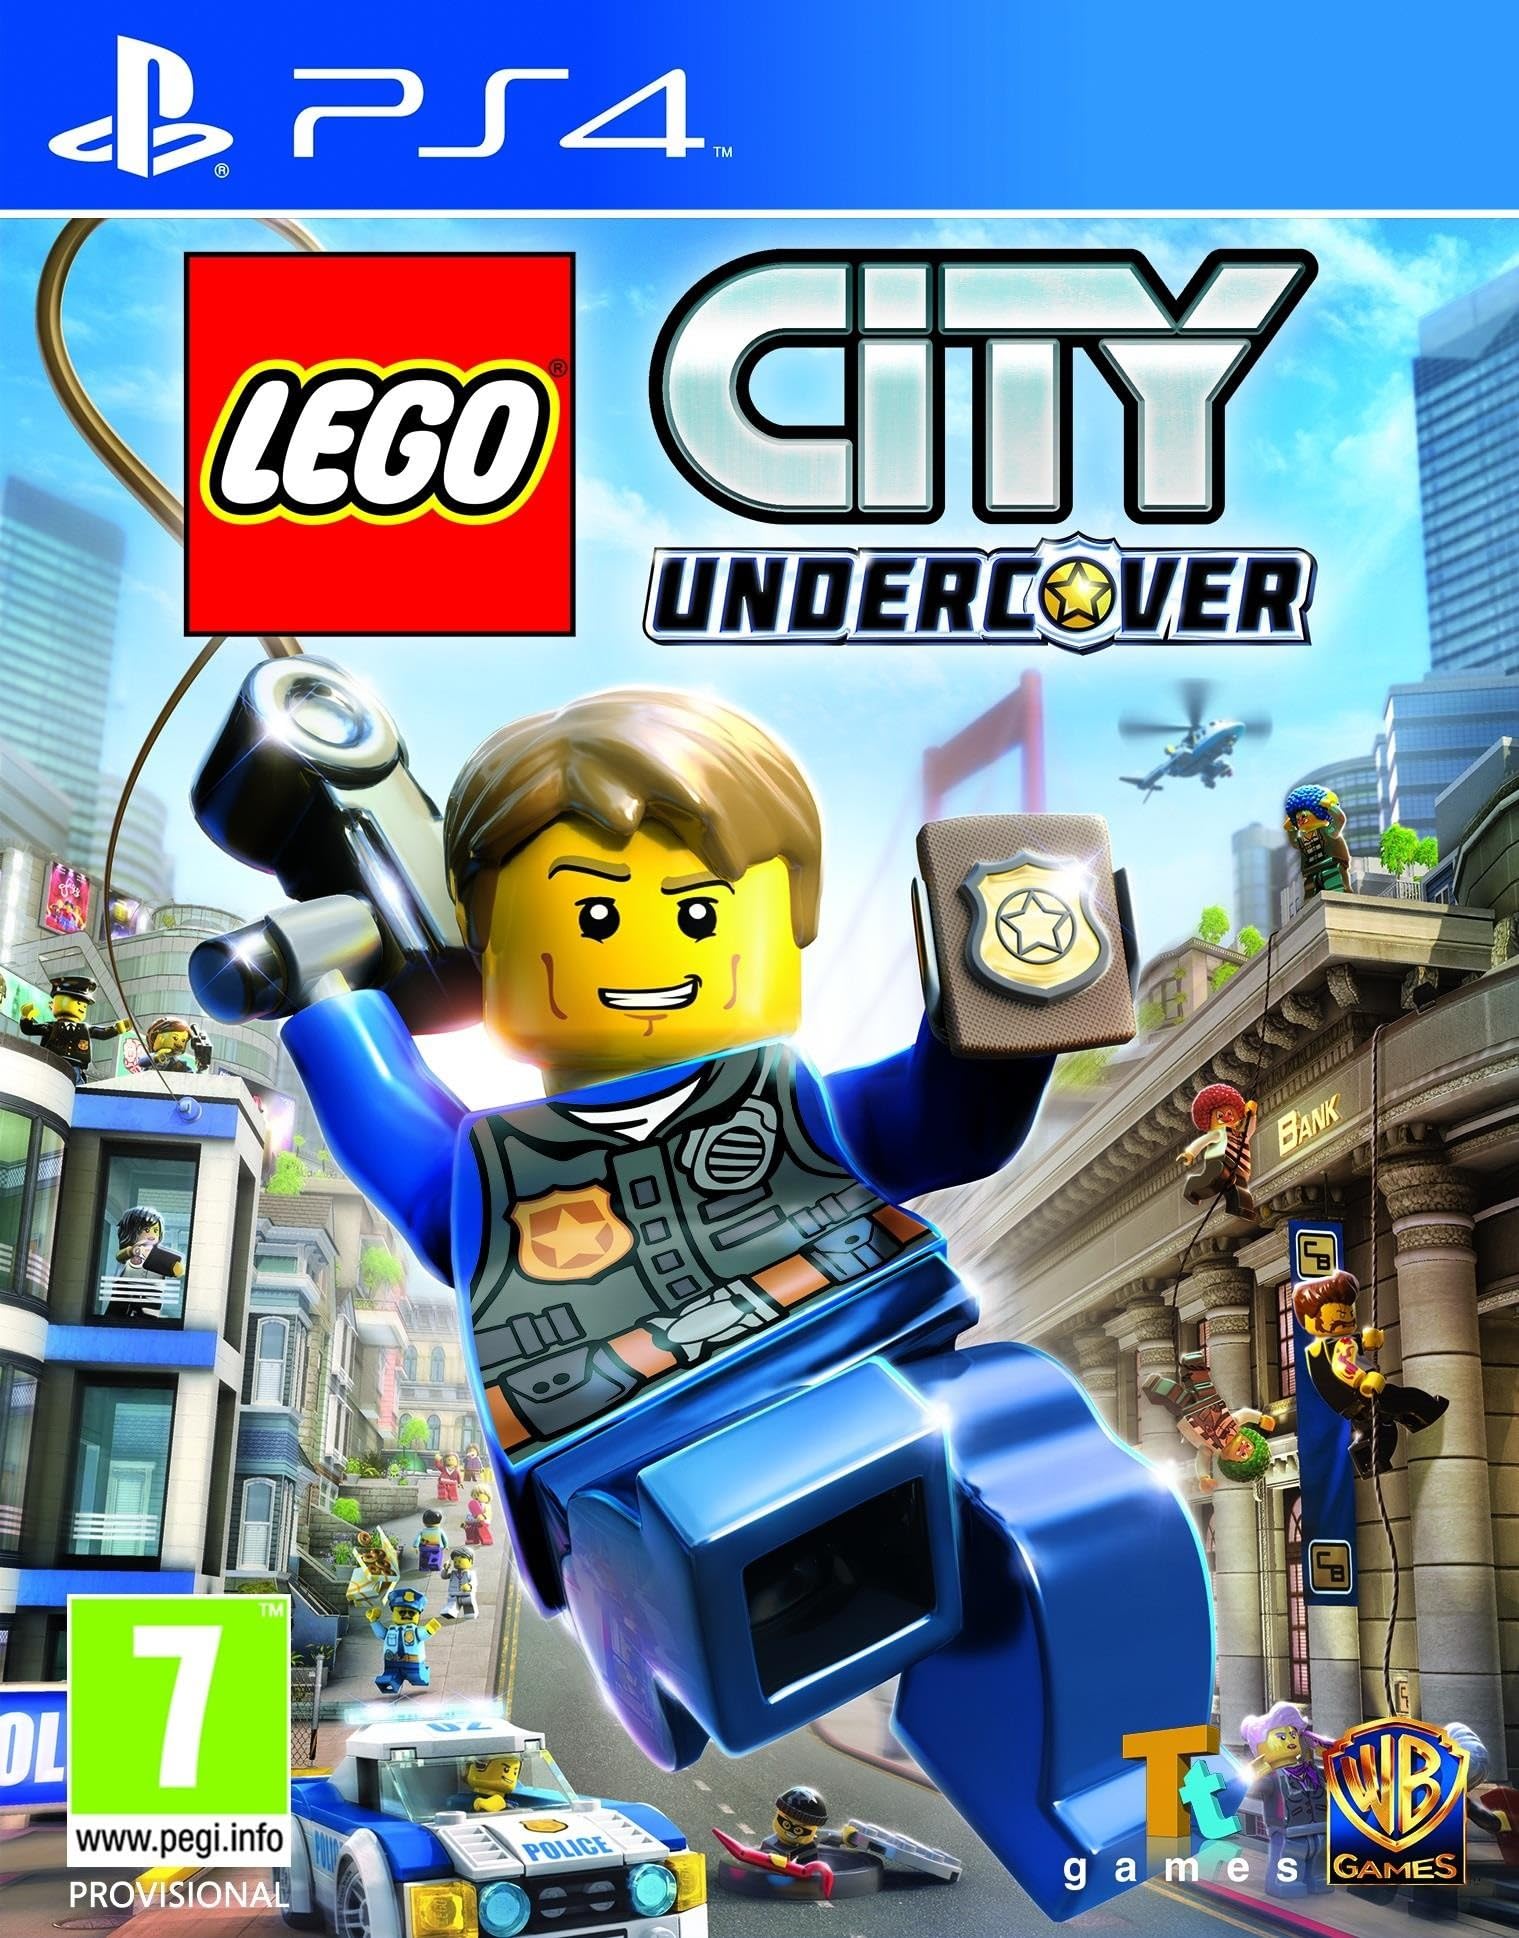 jaquette reduite de LEGO City Undercover sur Playstation 4